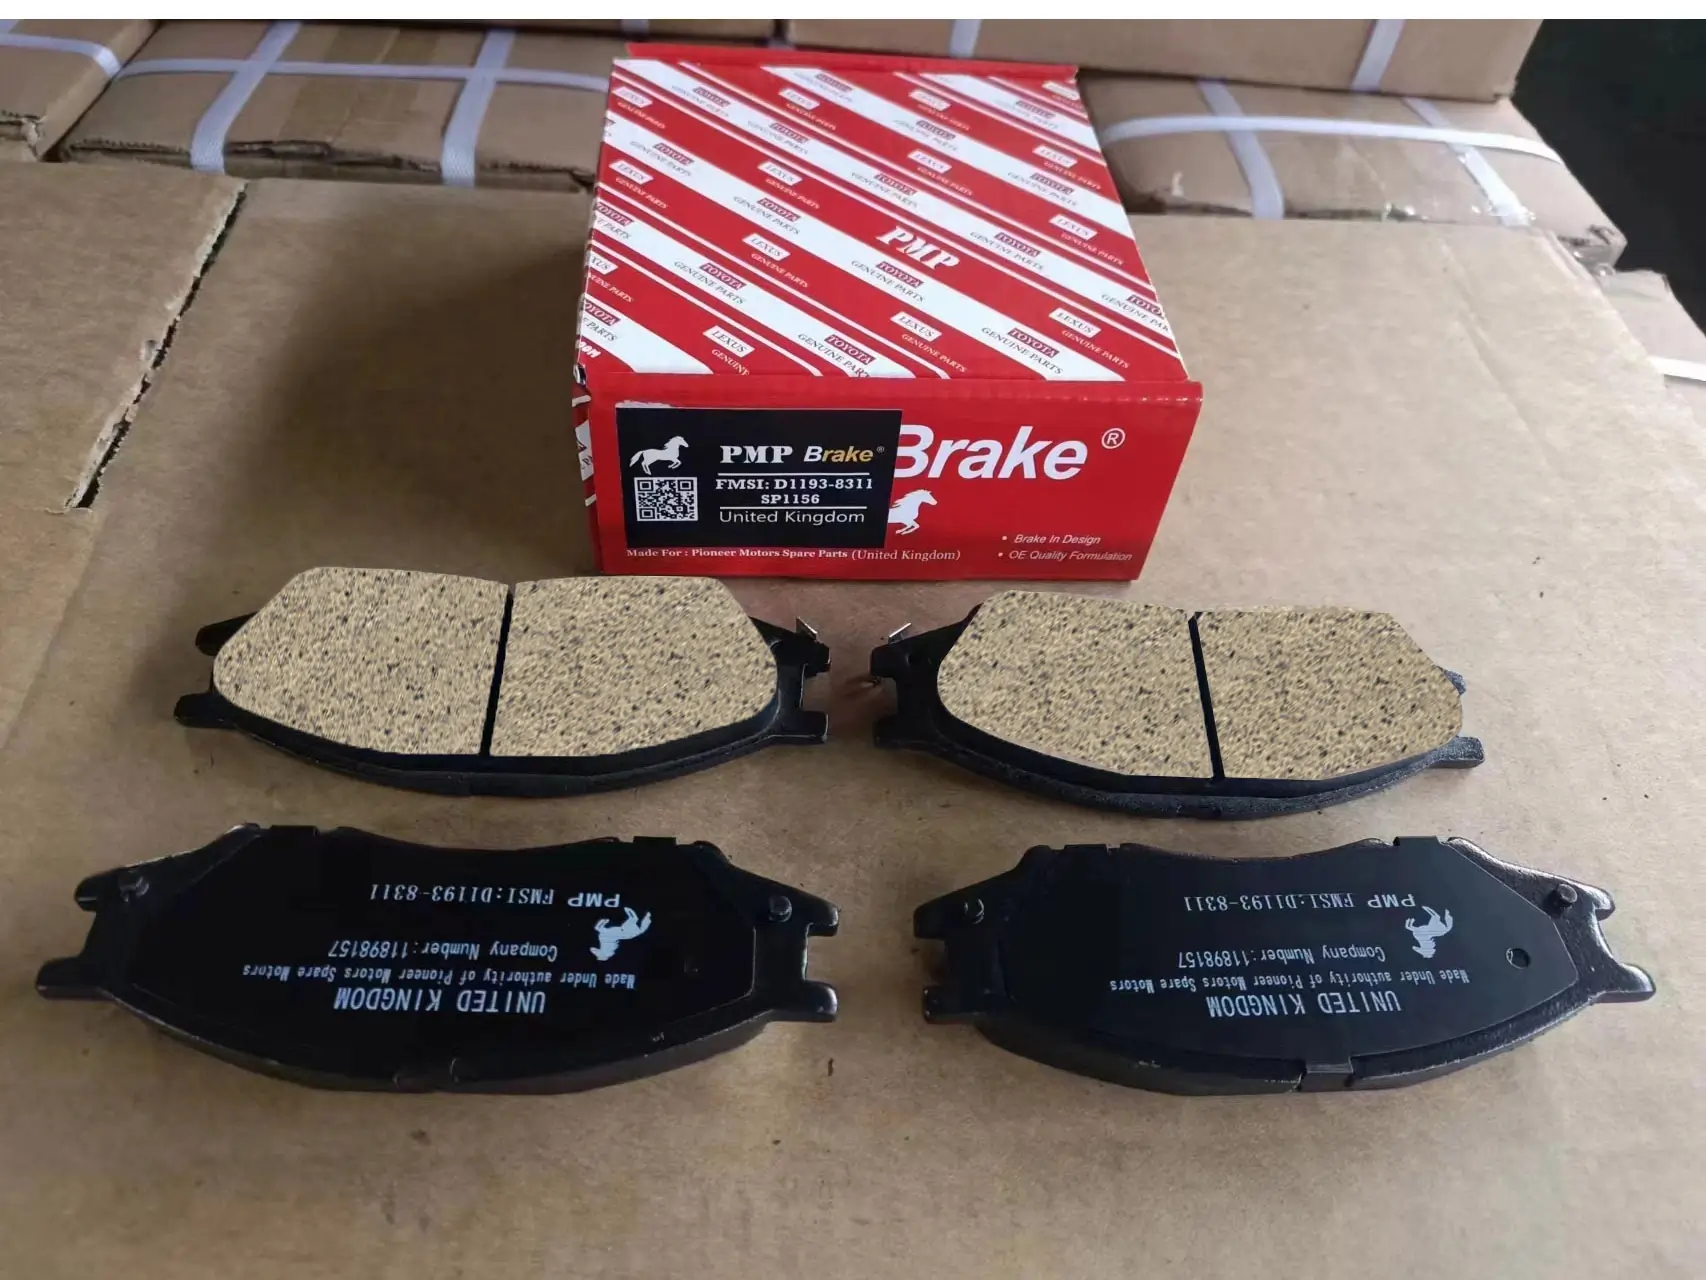 'Brake Pads', 'Ceramic Brake Pads', 'metallic Brake Pads', 'Hyundai Brake Pads'